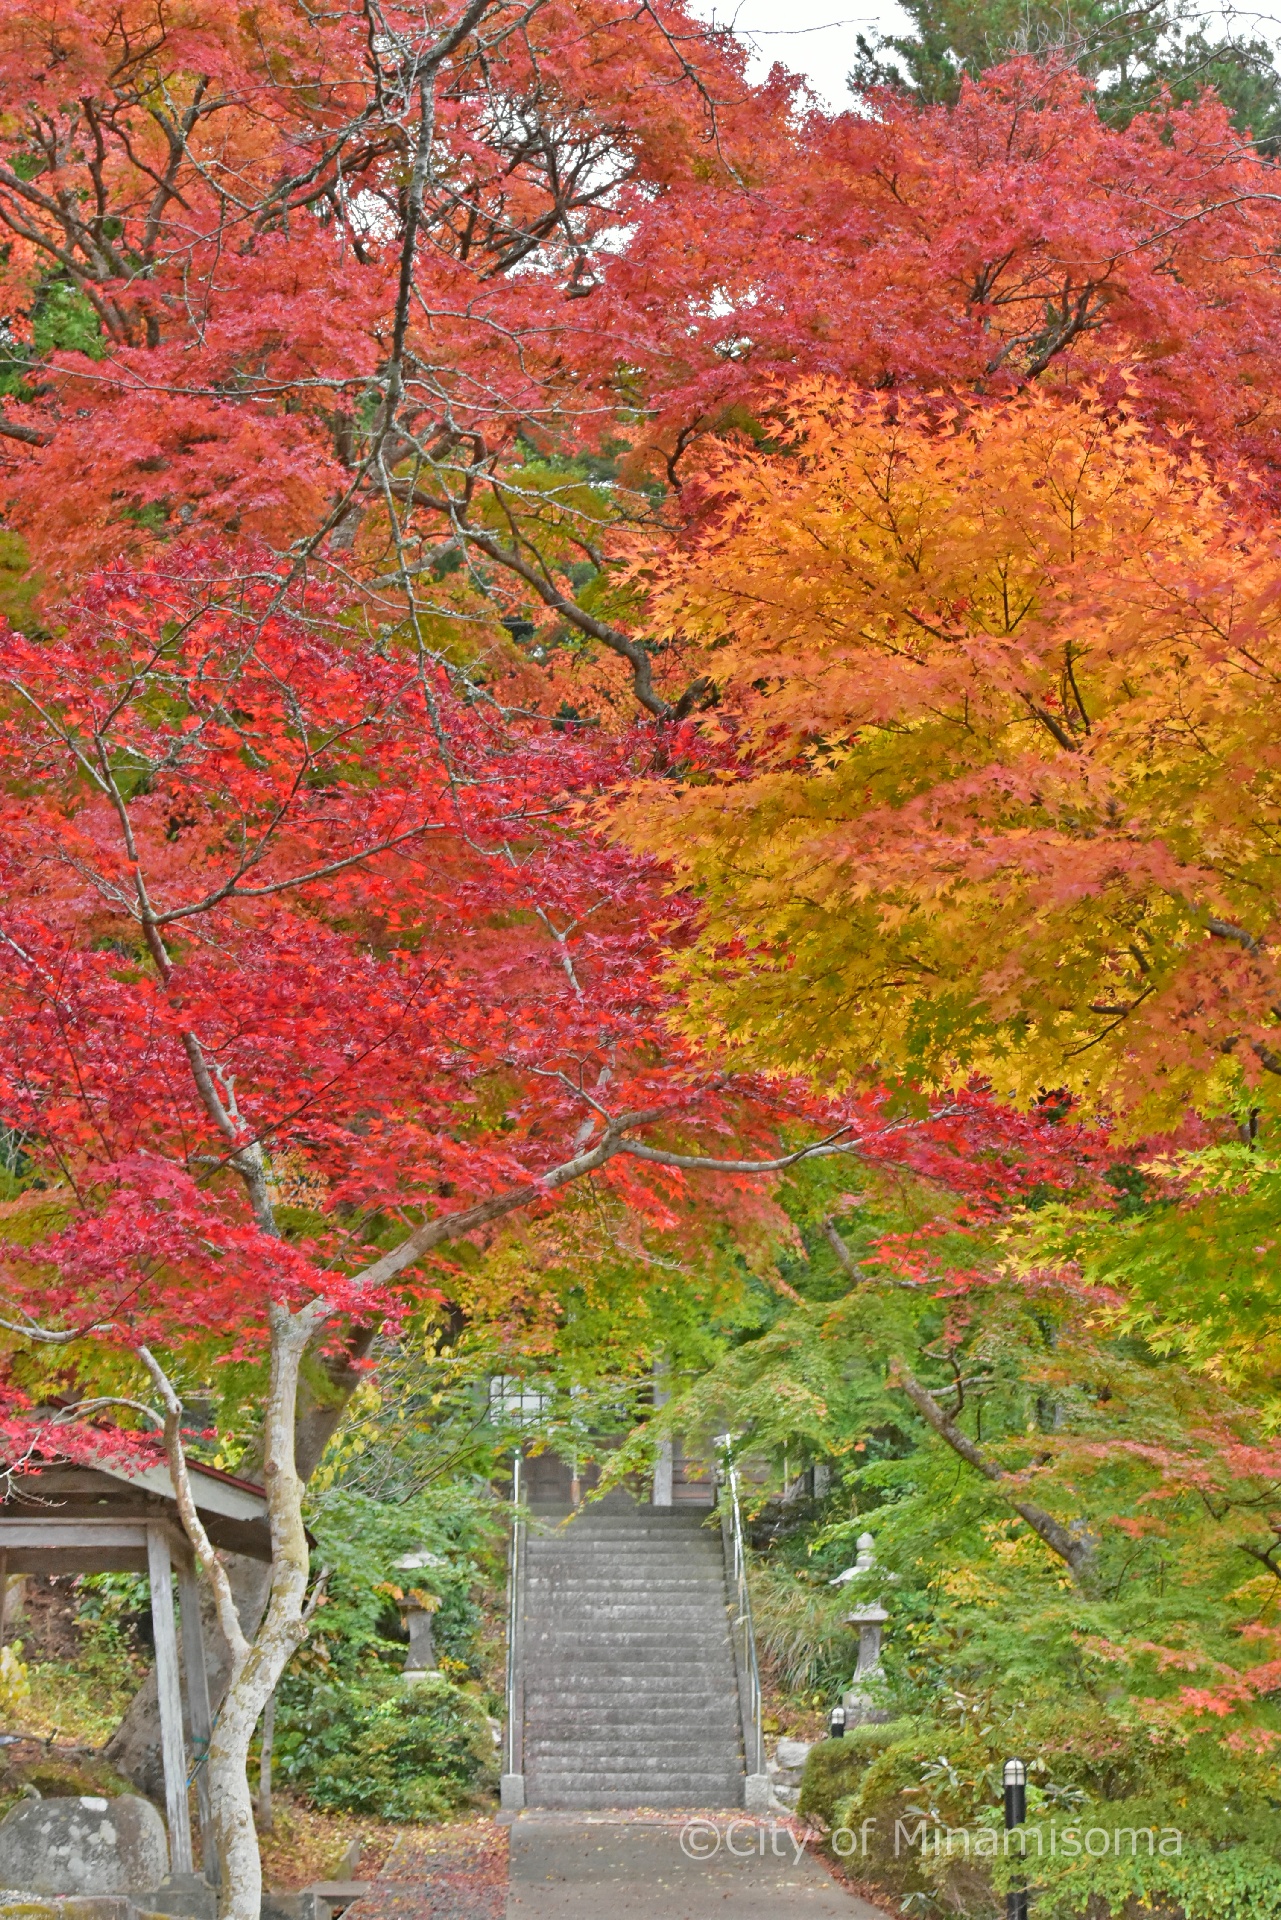 宝蔵寺のモミジが色づいている様子。赤と黄色、緑の葉が画面いっぱいに広がり、その向こうに石段が見えている。